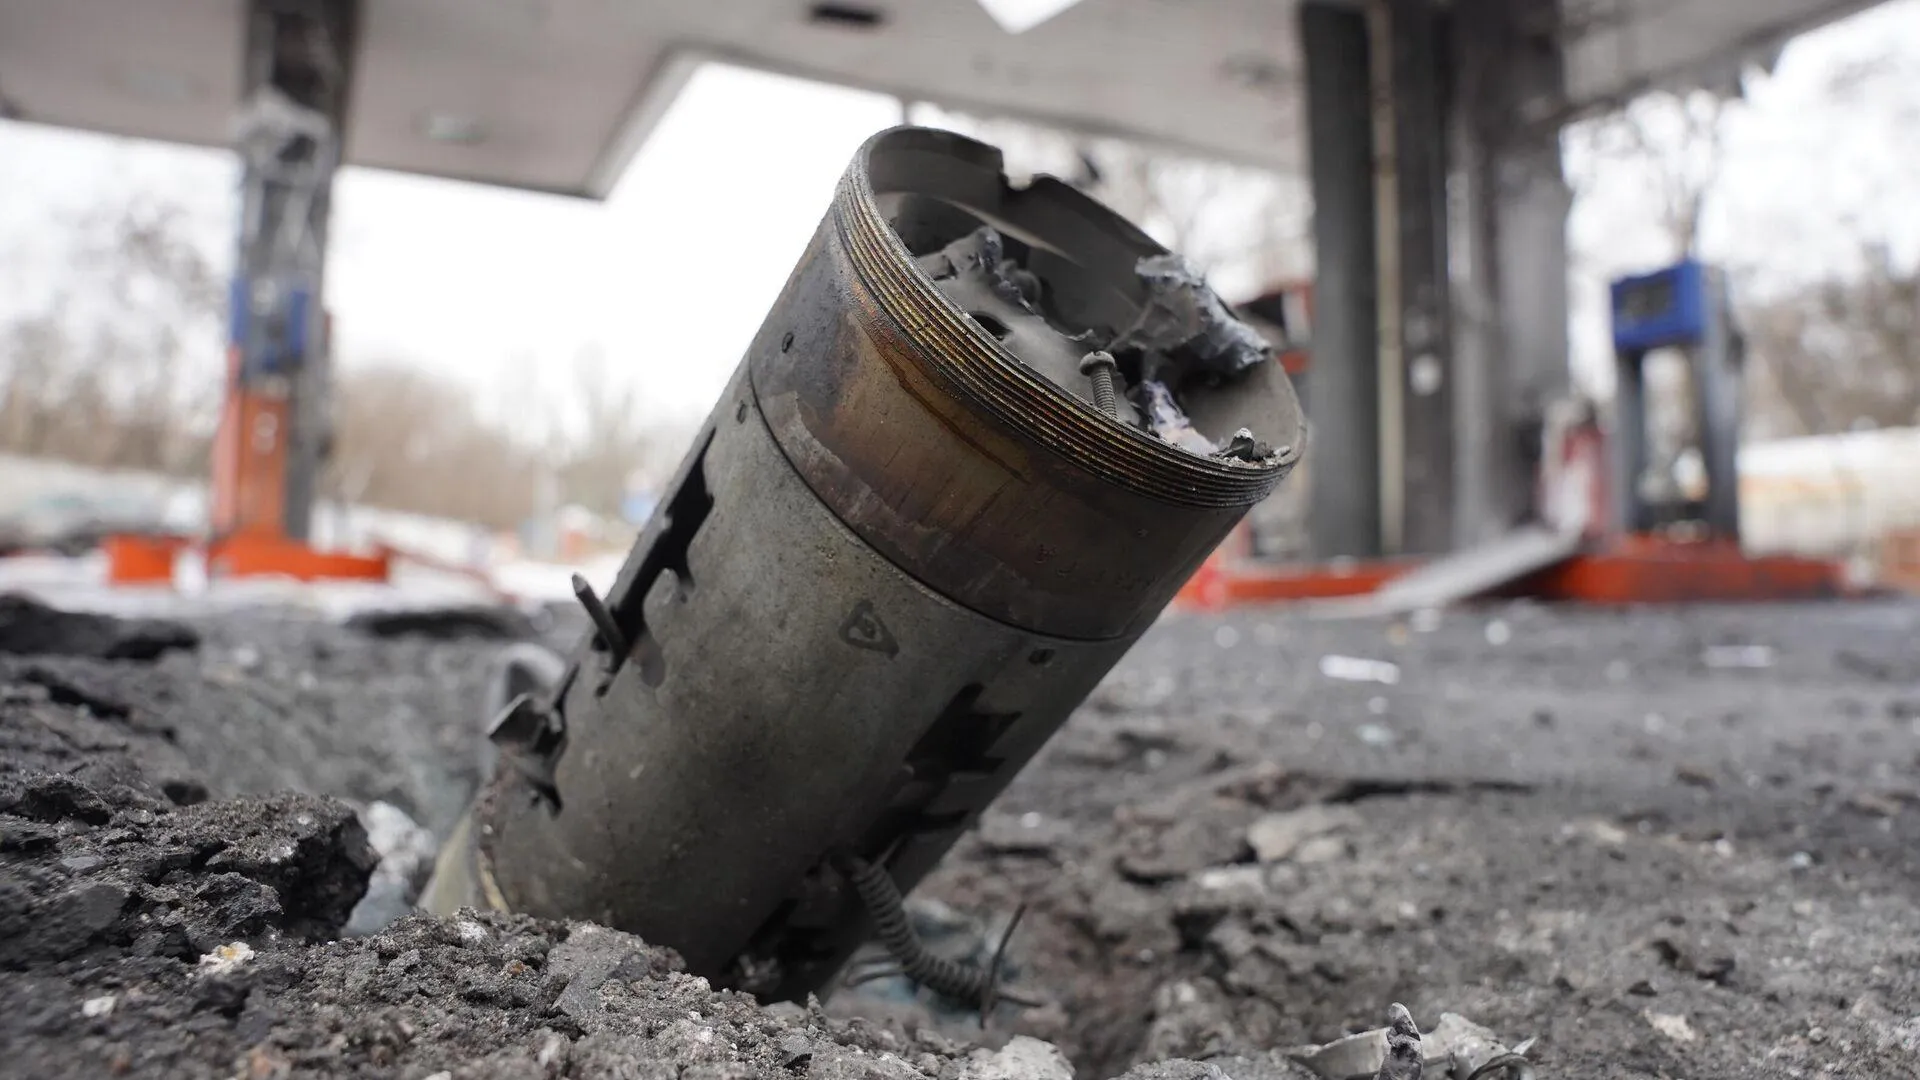 ВСУ нанесли ракетный удар по Луганску